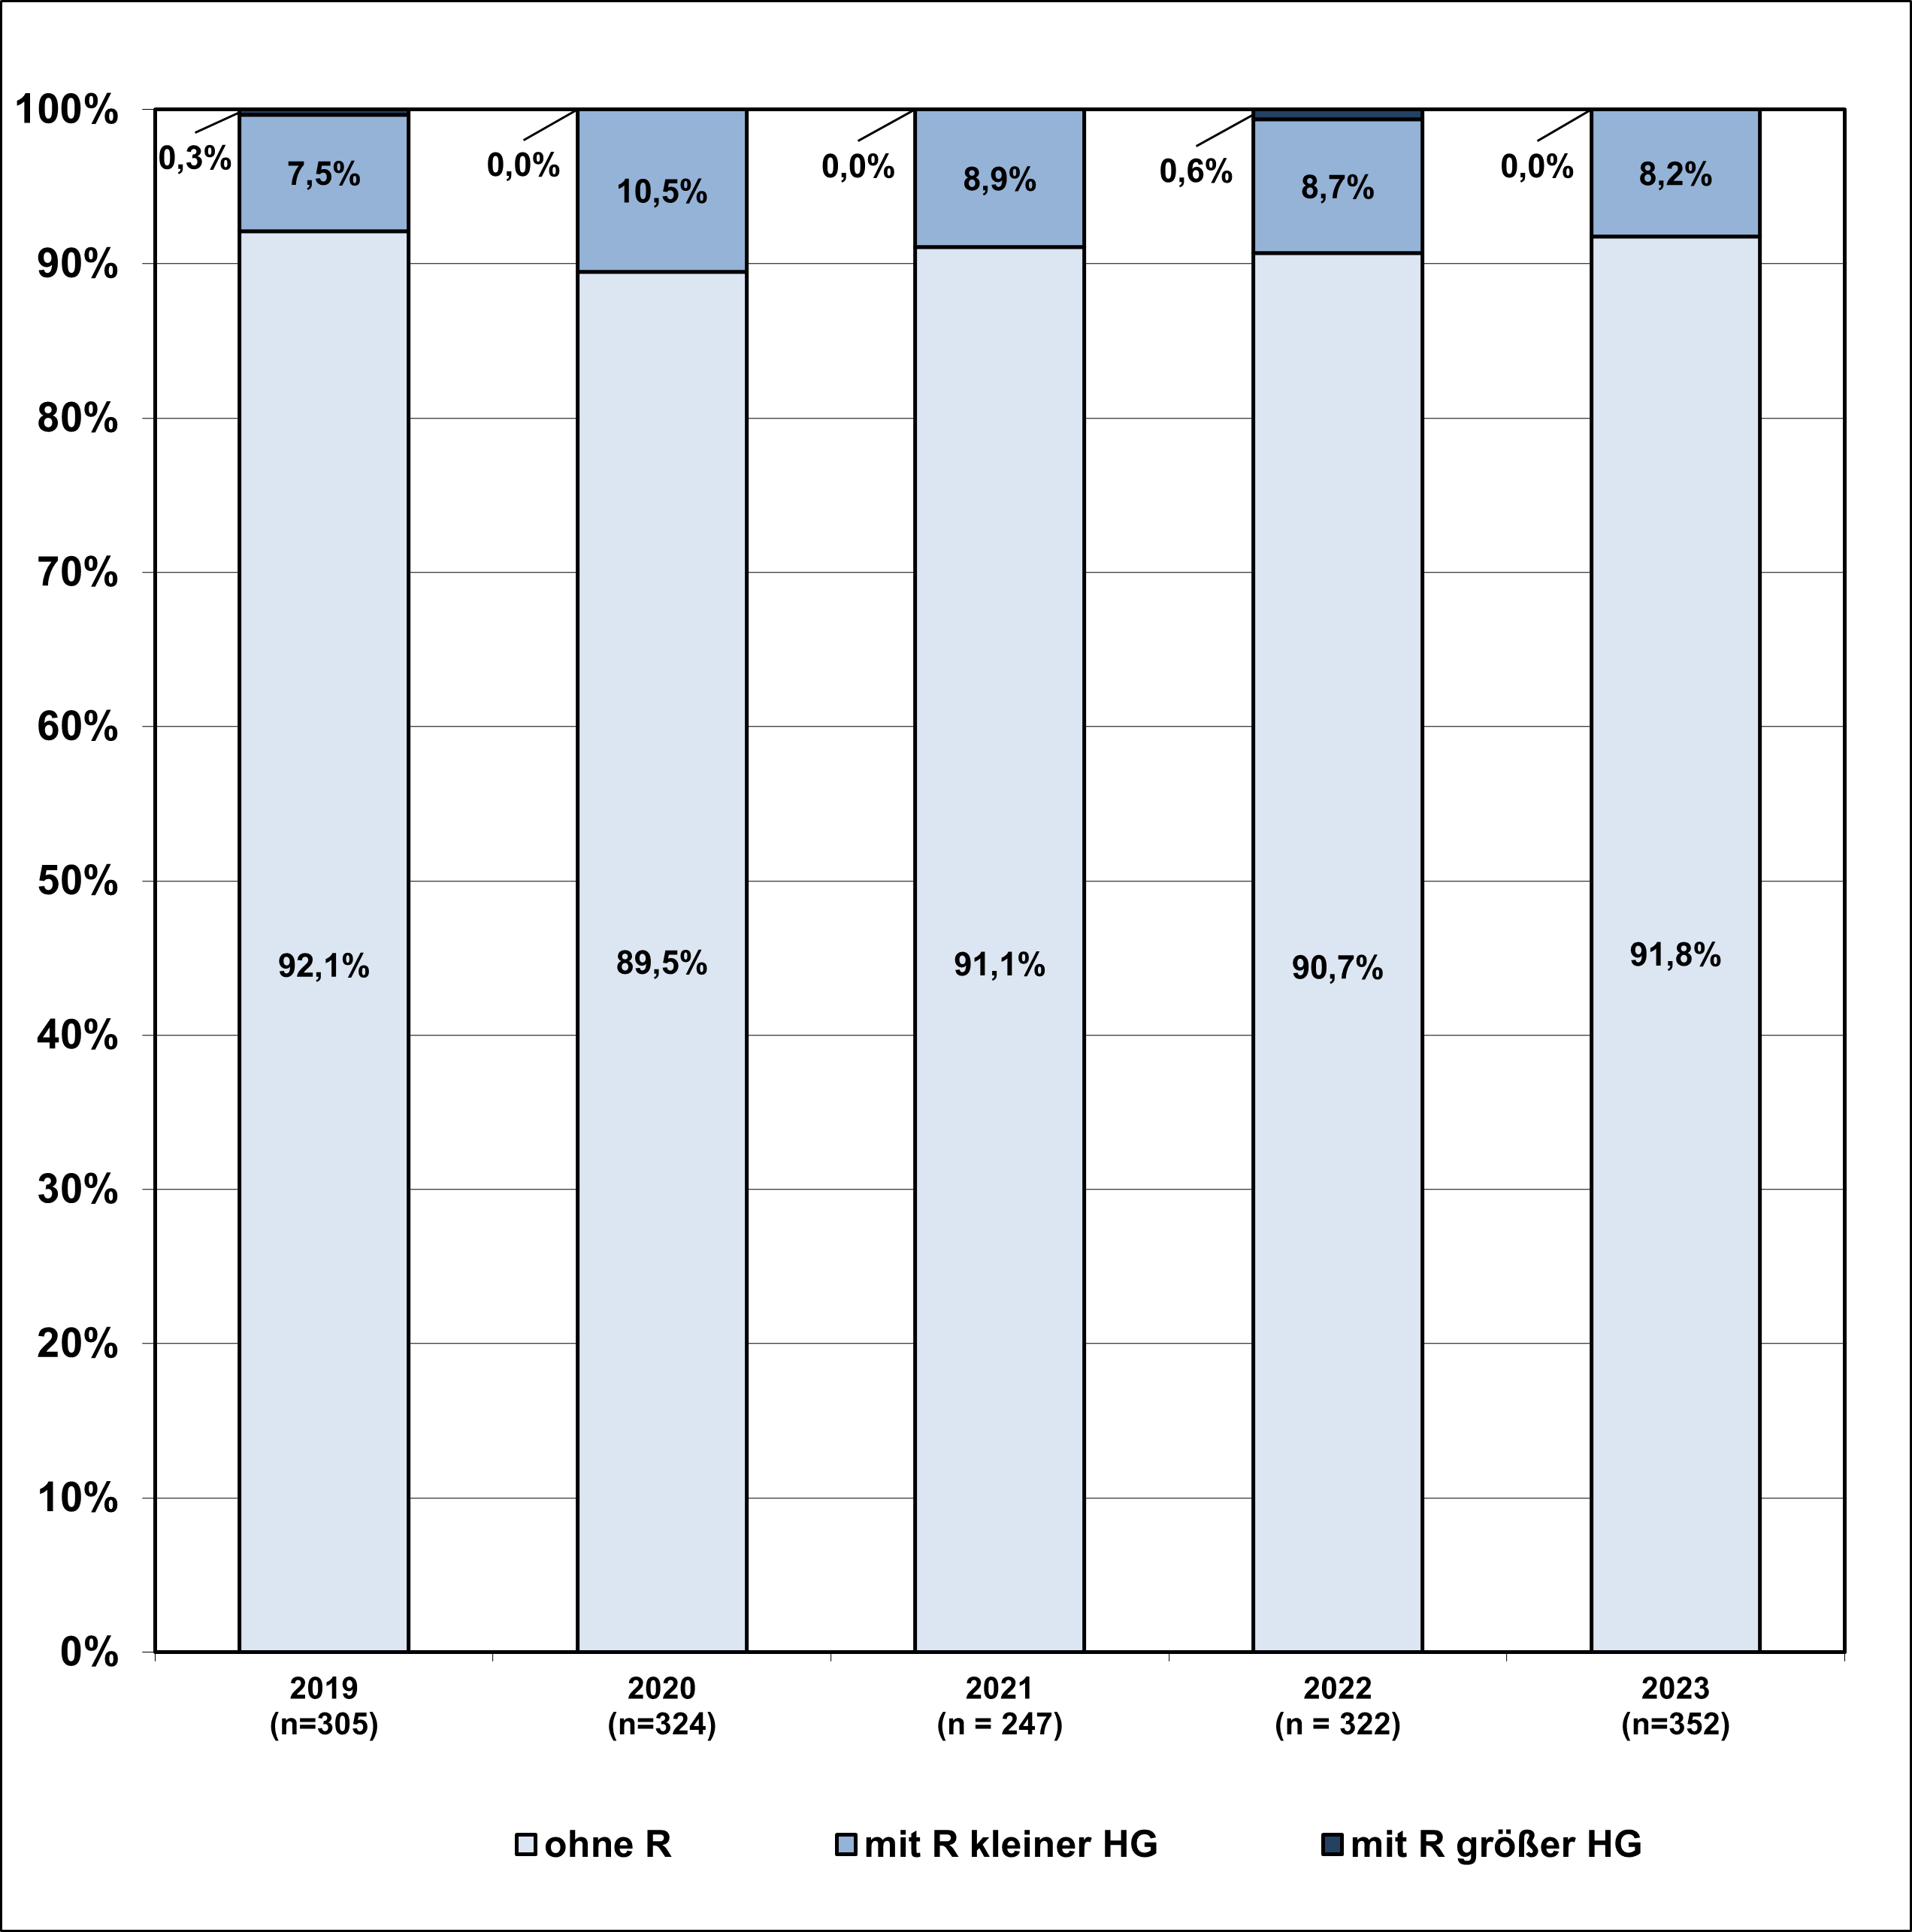 Die Abbildung zeigt in einem gestapelten Säulendiagramm die Verteilung der Gehalte von Rückständen in Obst und Gemüse aus ökologischer Erzeugung. Dargestellt sind die Jahre 2019, 2020, 2021, 2022 und 2023. Der untere Teil der Säule zeigt den Anteil der Proben ohne Pflanzenschutzmittelrückstände, der zweite Teil zeigt den Anteil der Proben mit Rückständen unterhalb der Höchstgehalte und der obere Teil zeigt die Proben mit Rückstandsgehalten oberhalb der Höchstgehalte. Im Jahr 2019 waren 92% der 305 Proben frei von Rückständen, 7,5% wiesen Rückstände unterhalb des Höchstgehalts auf, 0,3% Rückstände oberhalb des Höchstgehalts. Jahr 2020 waren 89,5% der 324 Proben frei von Rückständen, 10,5% wiesen Rückstände unterhalb des Höchstgehalts auf, keine Probe Rückstände oberhalb des Höchstgehalts. Jahr 2021 waren 91,1% der 247 Proben frei von Rückständen, 8,9% wiesen Rückstände unterhalb des Höchstgehalts auf, keine Probe Rückstände oberhalb des Höchstgehalts. Jahr 2022 waren 90,7% der 322 Proben frei von Rückständen, 8,7% wiesen Rückstände unterhalb des Höchstgehalts auf, 0,6% Rückstände oberhalb des Höchstgehalts. Jahr 2023 waren 91,8% der 352 Proben frei von Rückständen, 8,2% wiesen Rückstände unterhalb des Höchstgehalts auf, keine Probe Rückstände oberhalb des Höchstgehalts.